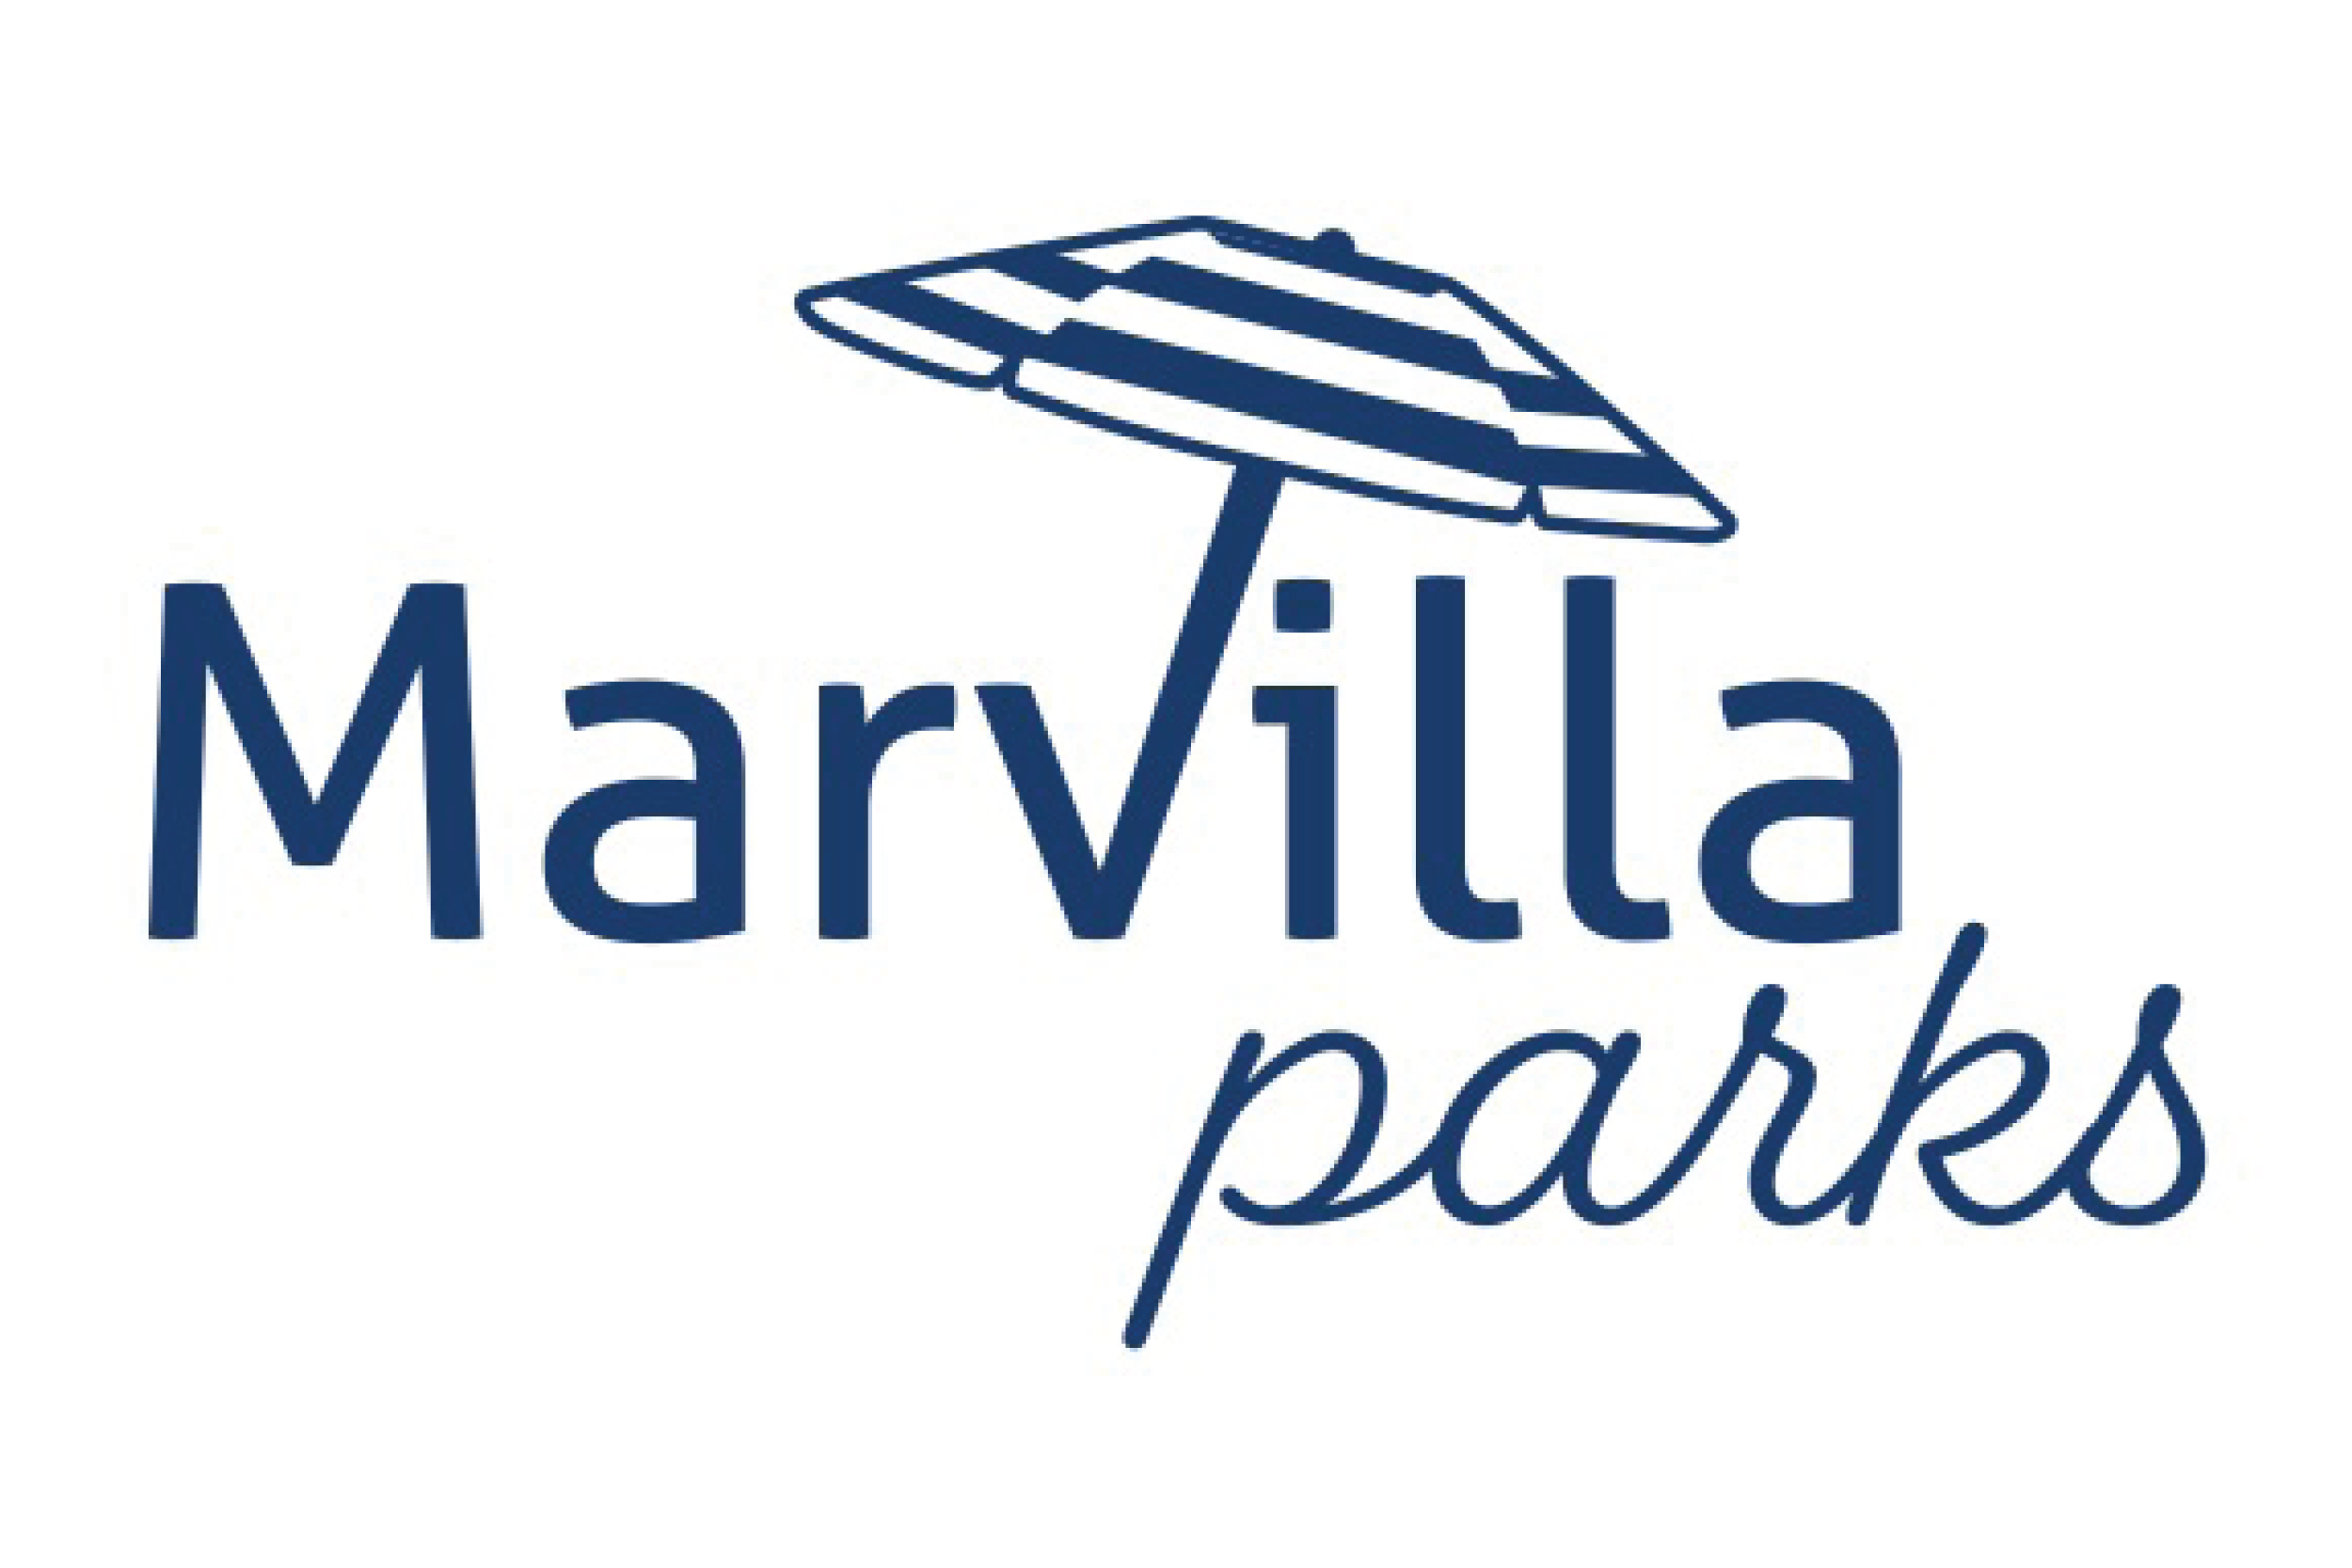 Marvilla parks